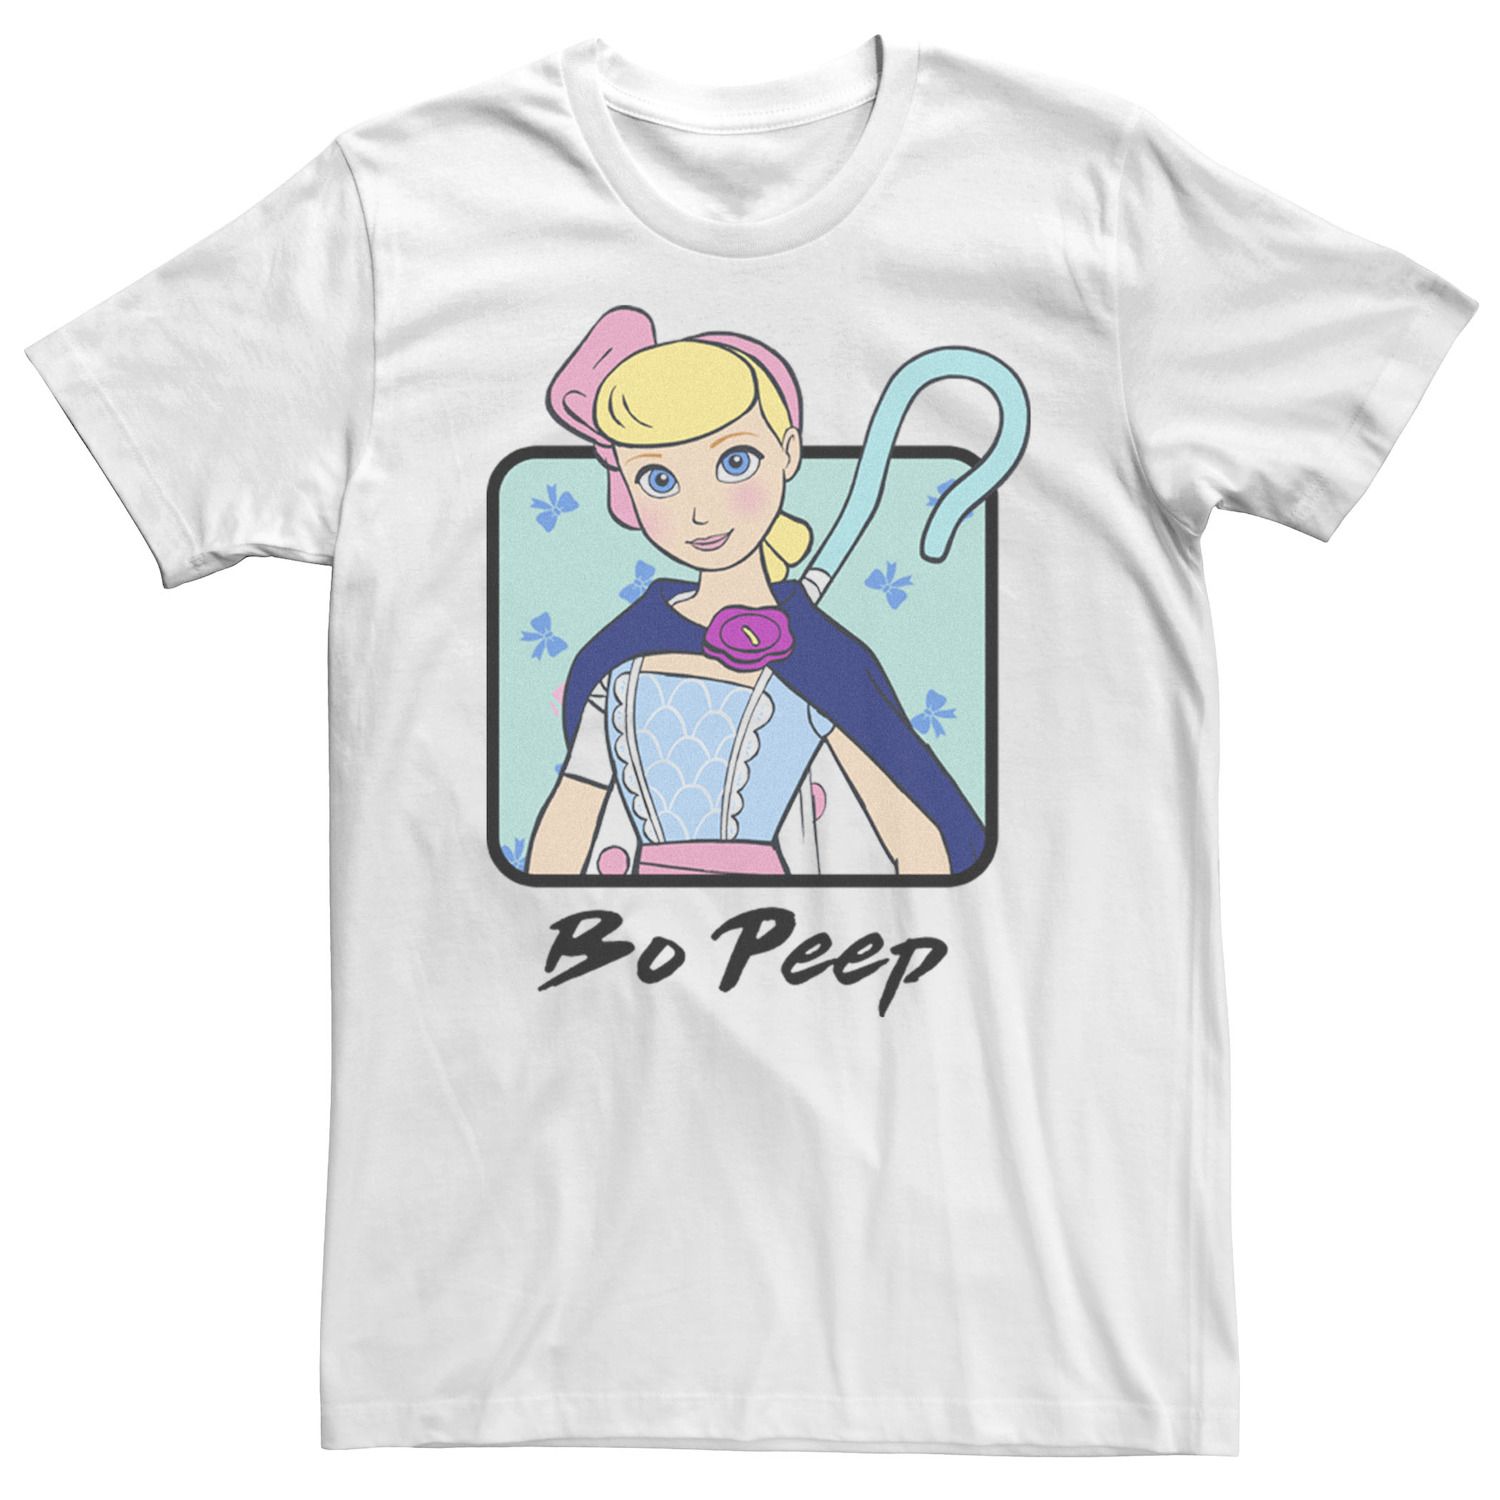 Мужская футболка Toy Story 4 Bo Peep с цветным бюстом и портретом Disney / Pixar фигурка q posket pixar character toy story 4 bo peep bp15986p